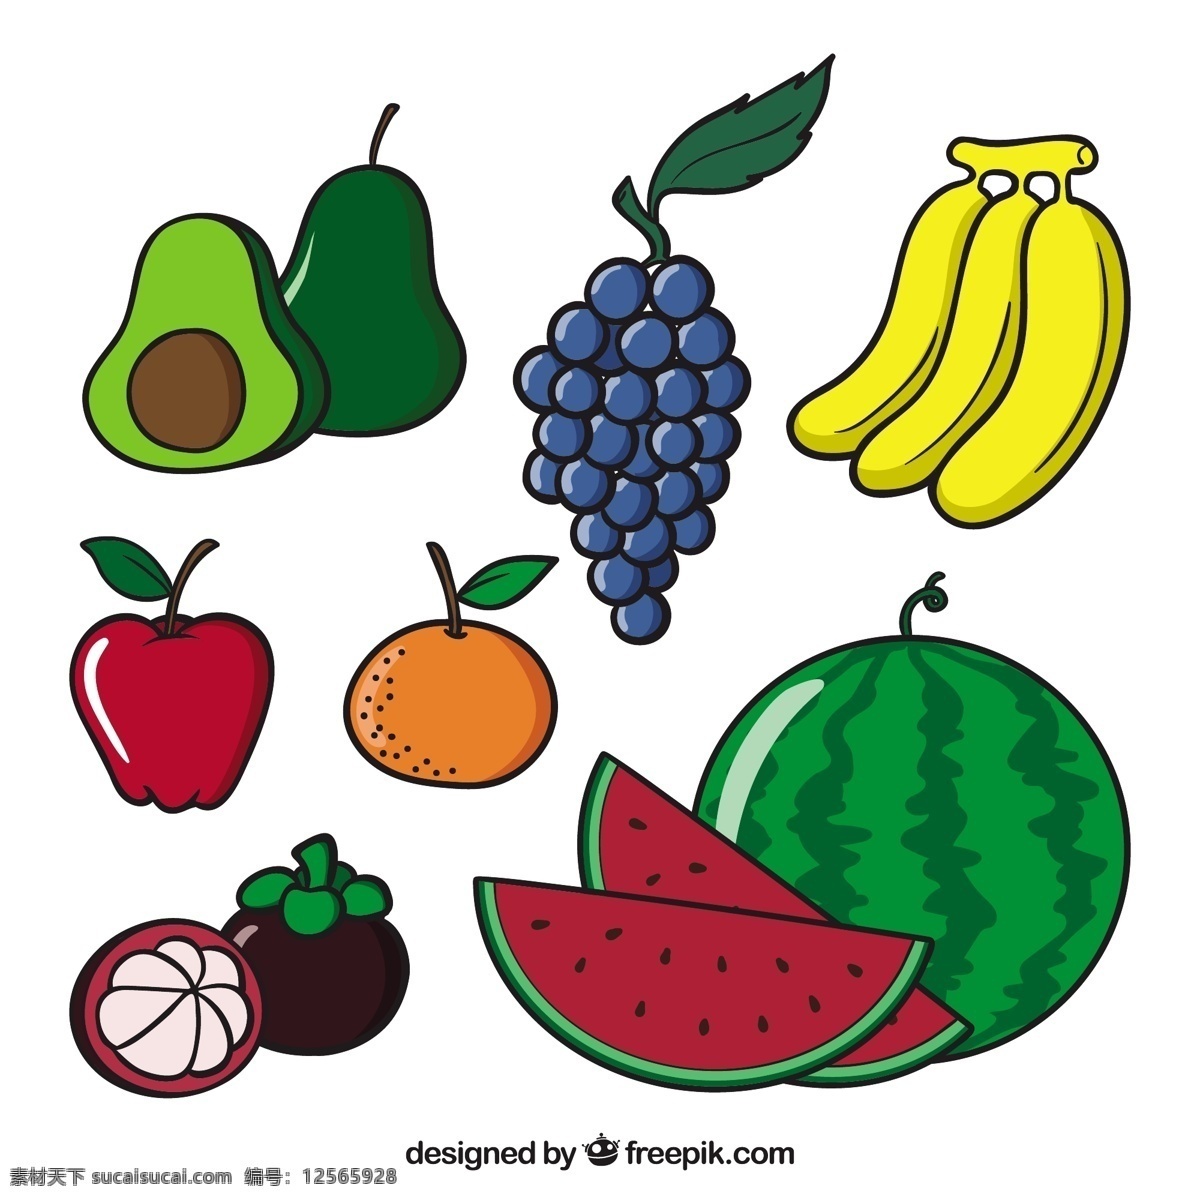 美味 水果 插图 几个 美味的 水果插图 矢量素材